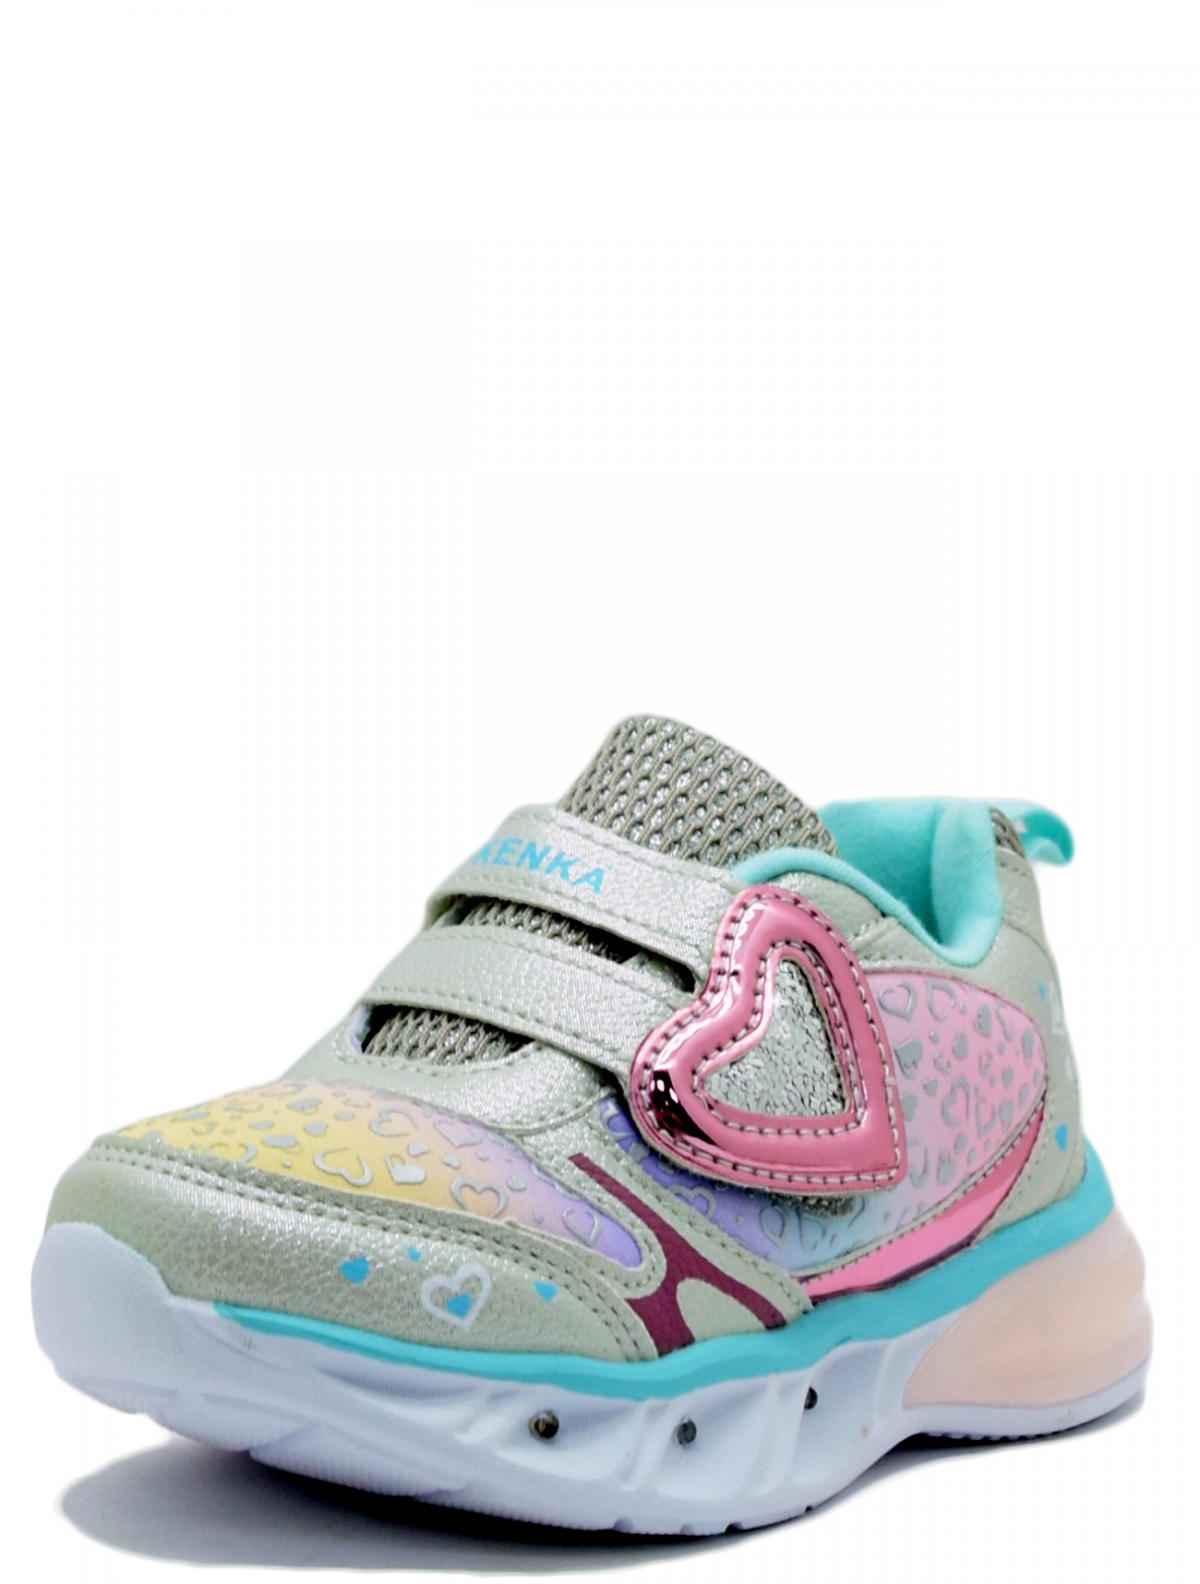 Kenka KNM-2052 детские кроссовки 2150 руб купить в интернет-магазине V-Shoes